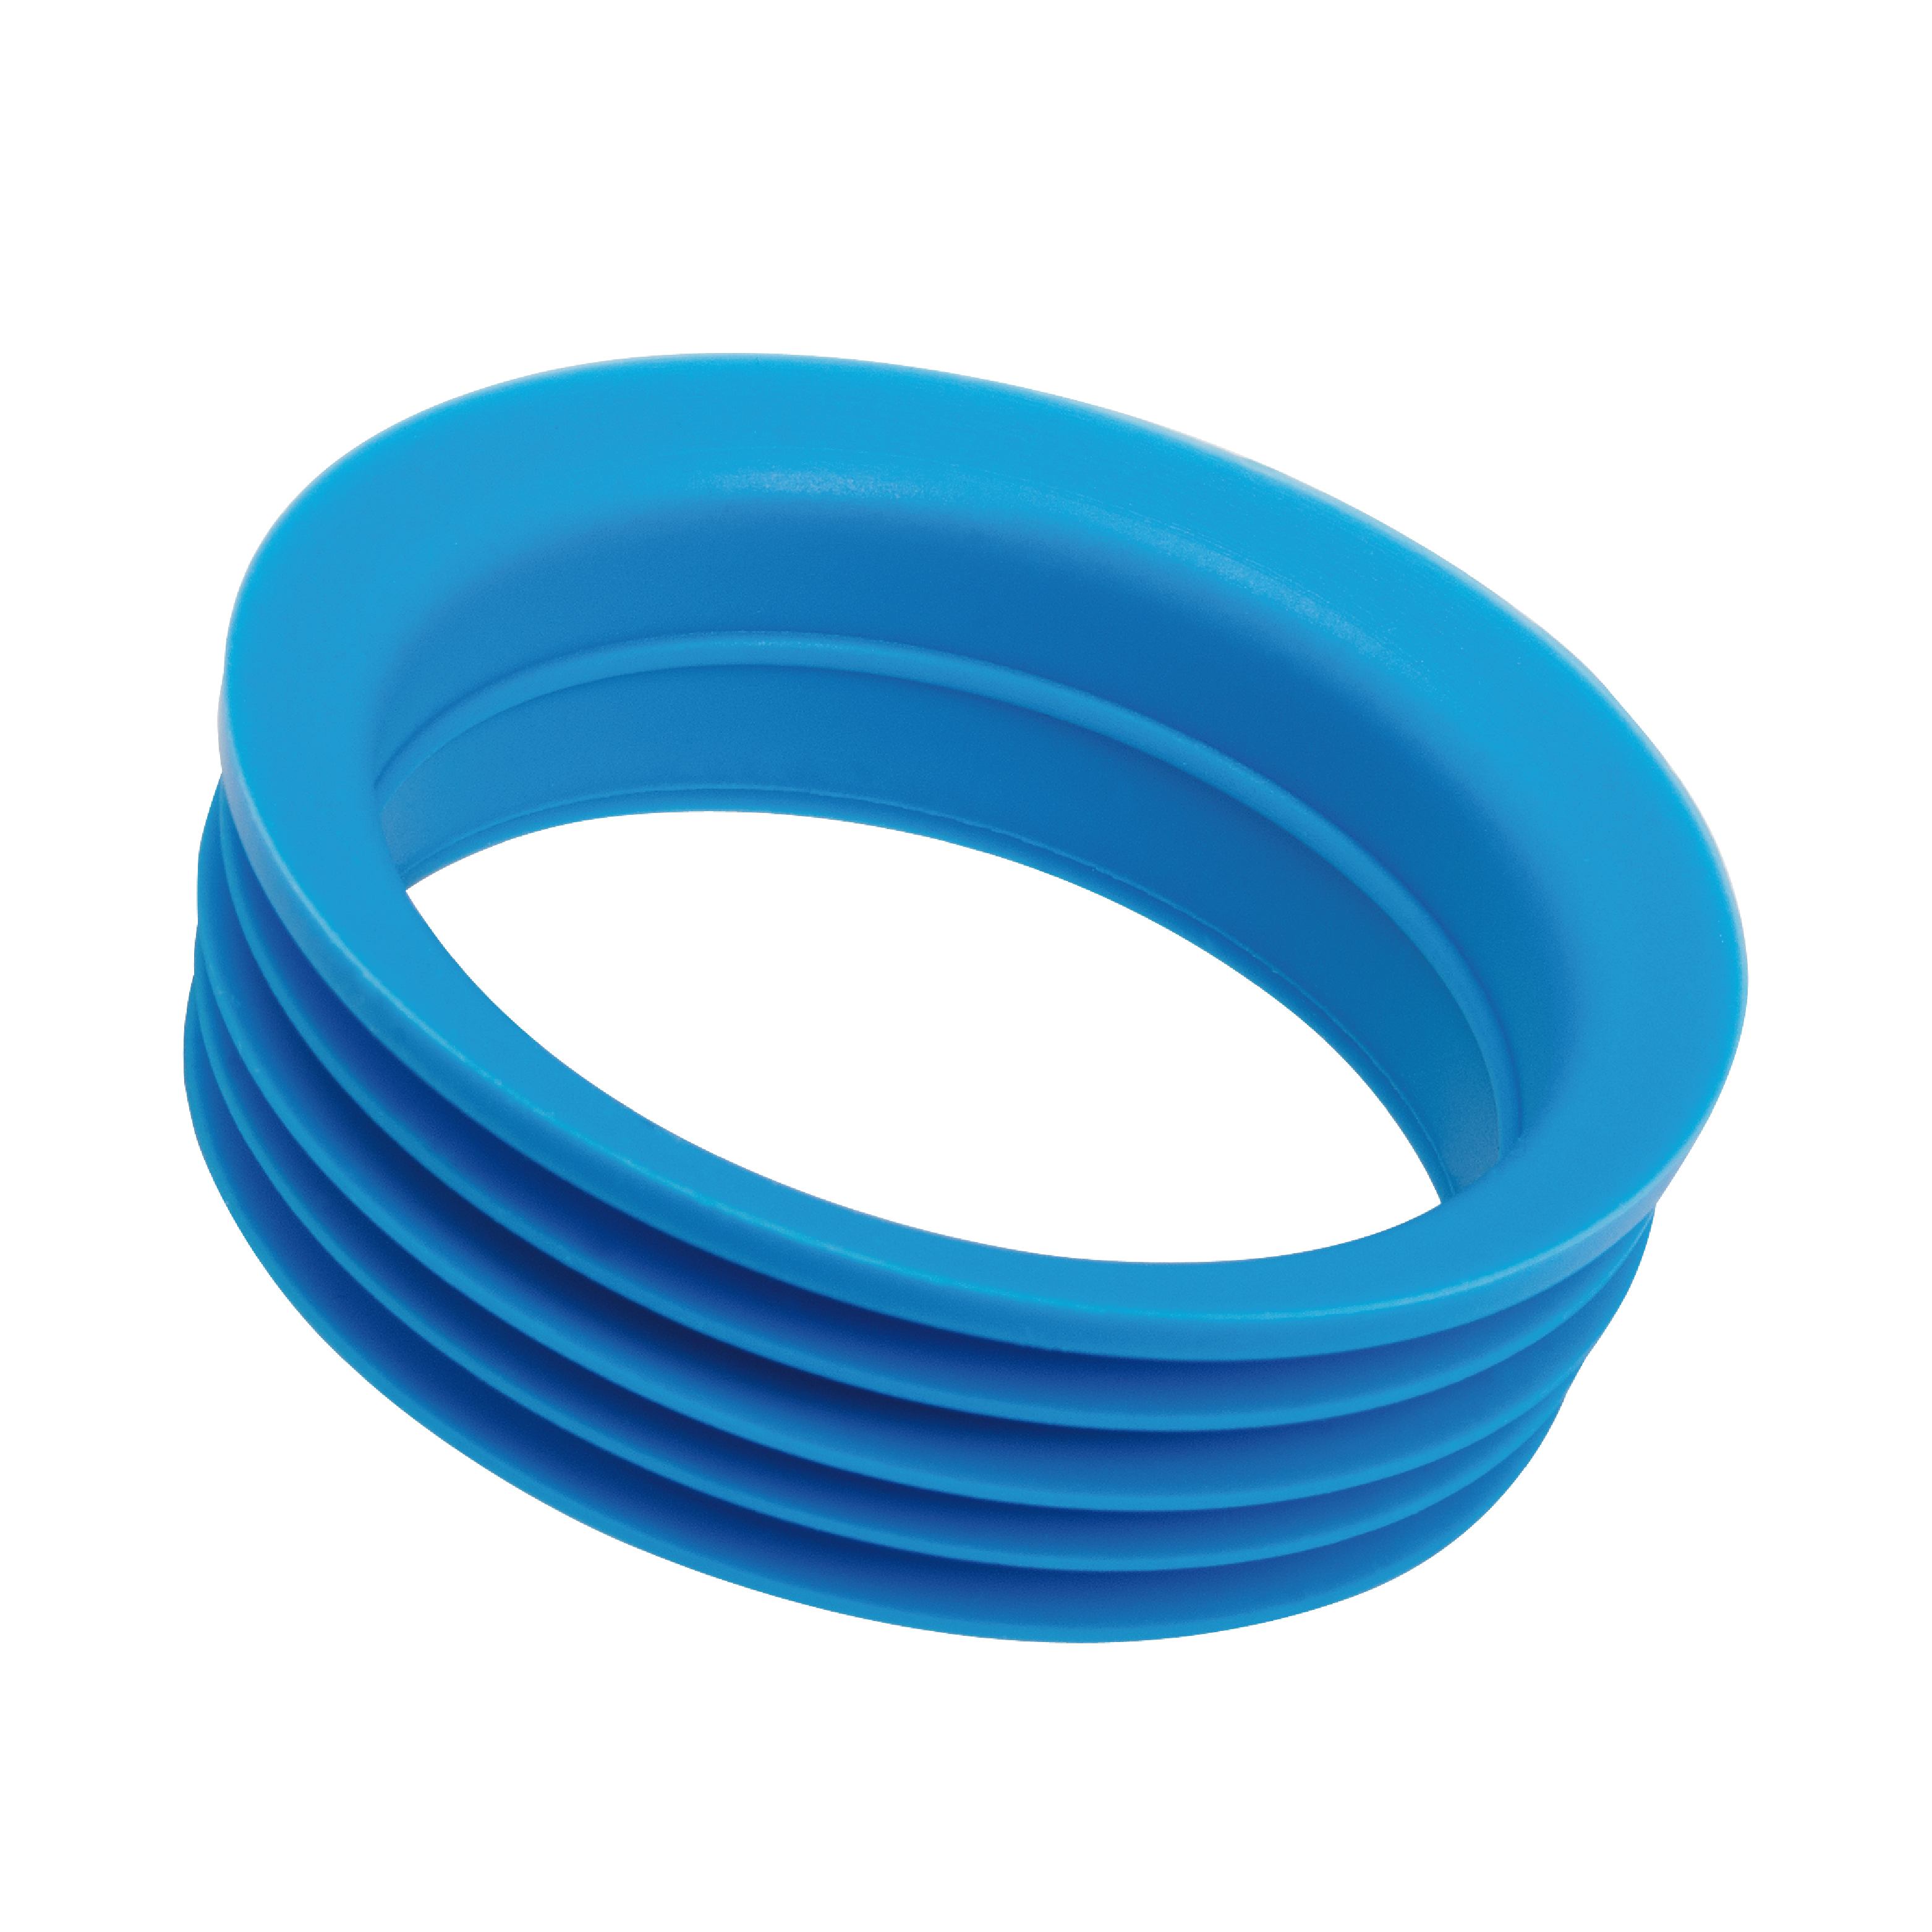 Silikonring für Glaskaraffe SVEA und FRIA 1,2 Liter in Blau